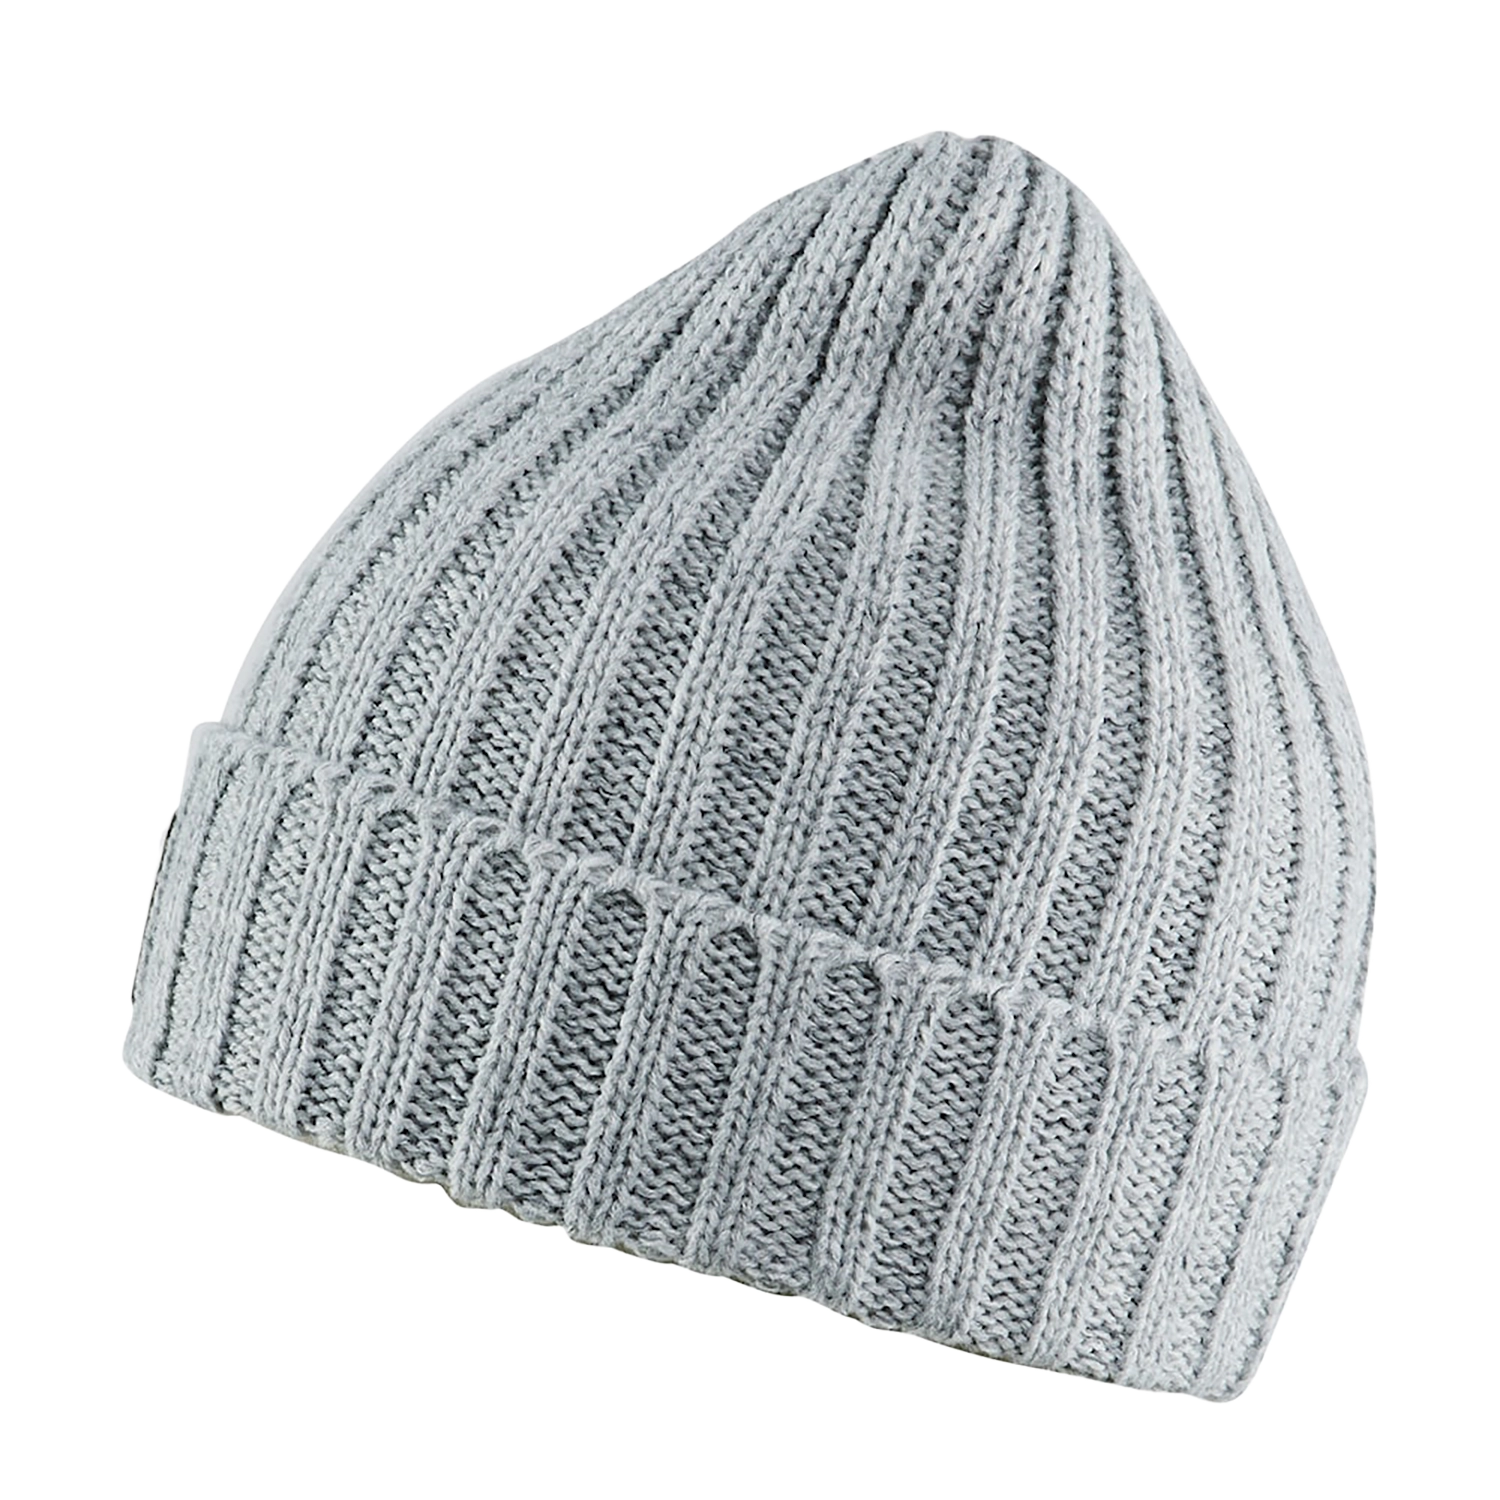 Bonnet tricoté réfléchissant 2027/2802/9291 - gris chiné taille unique